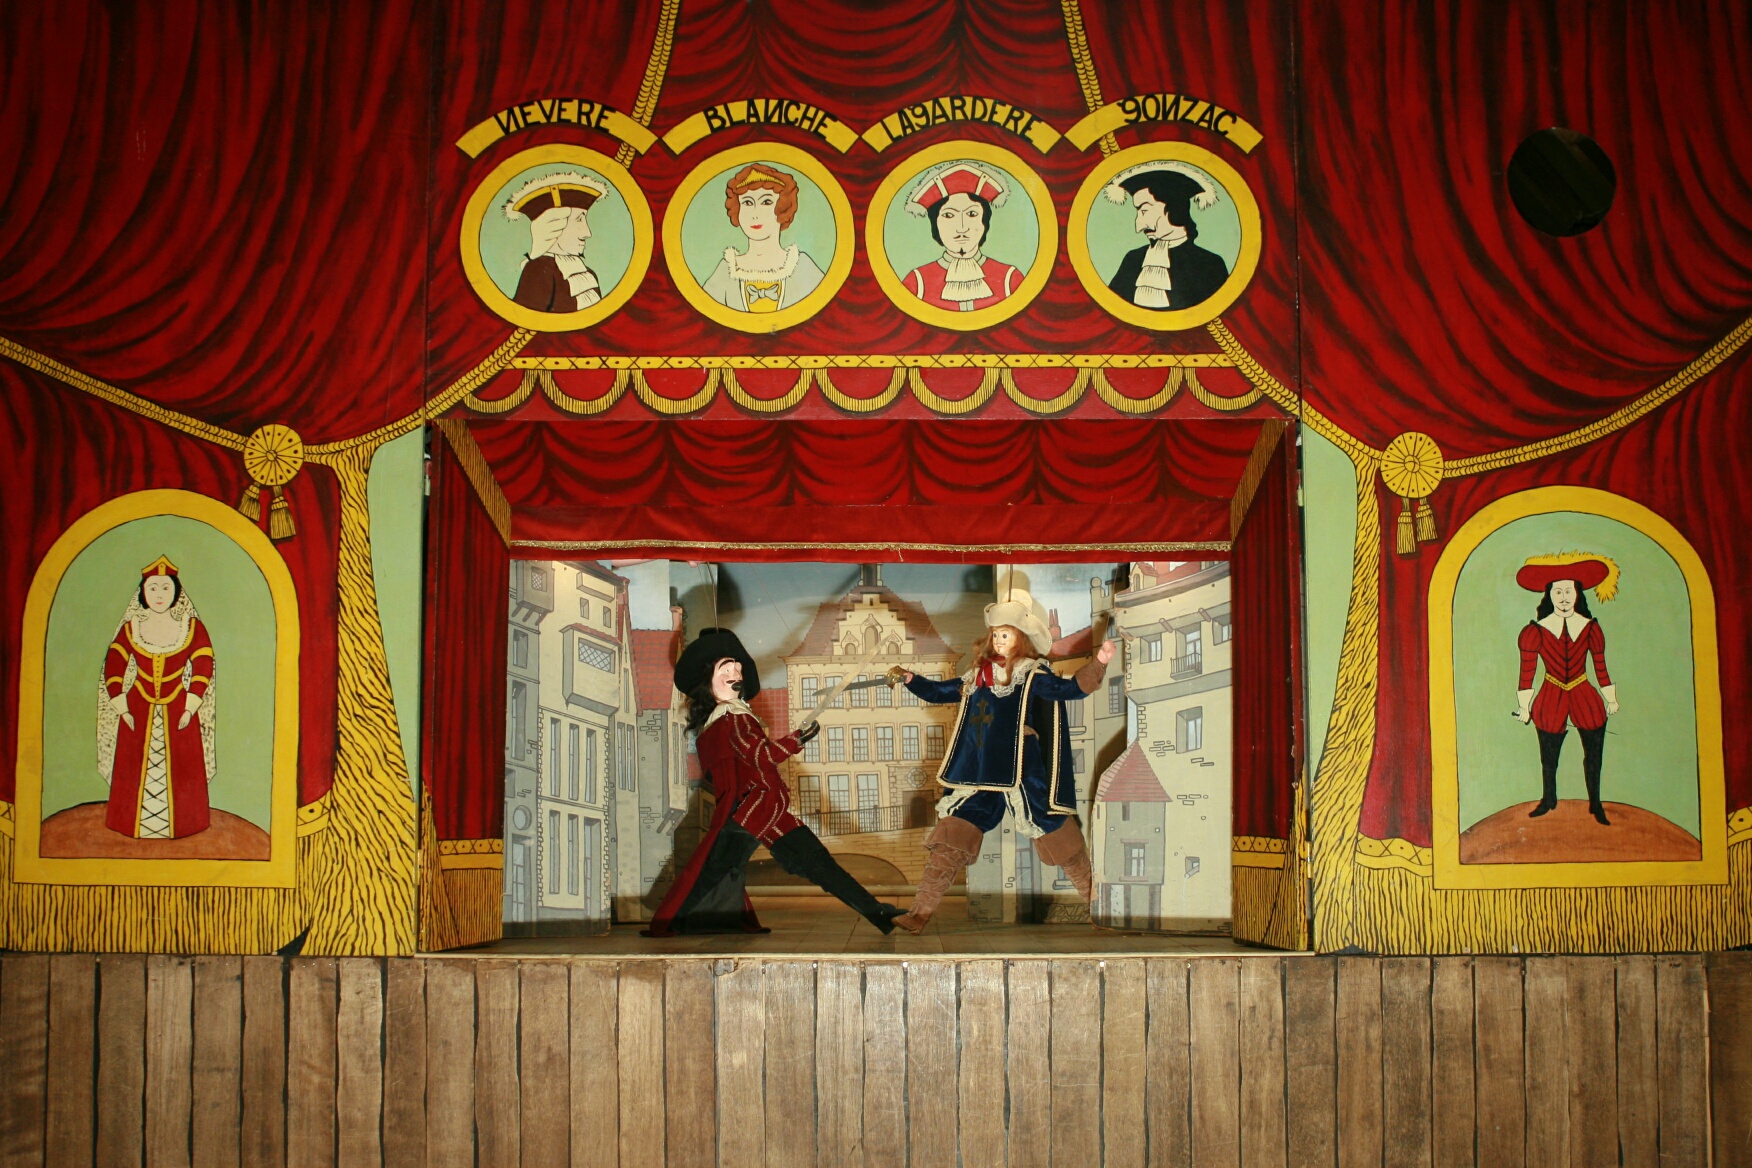 Marionnettes de tradition populaire de Bruxelles - Estaminet folklorique